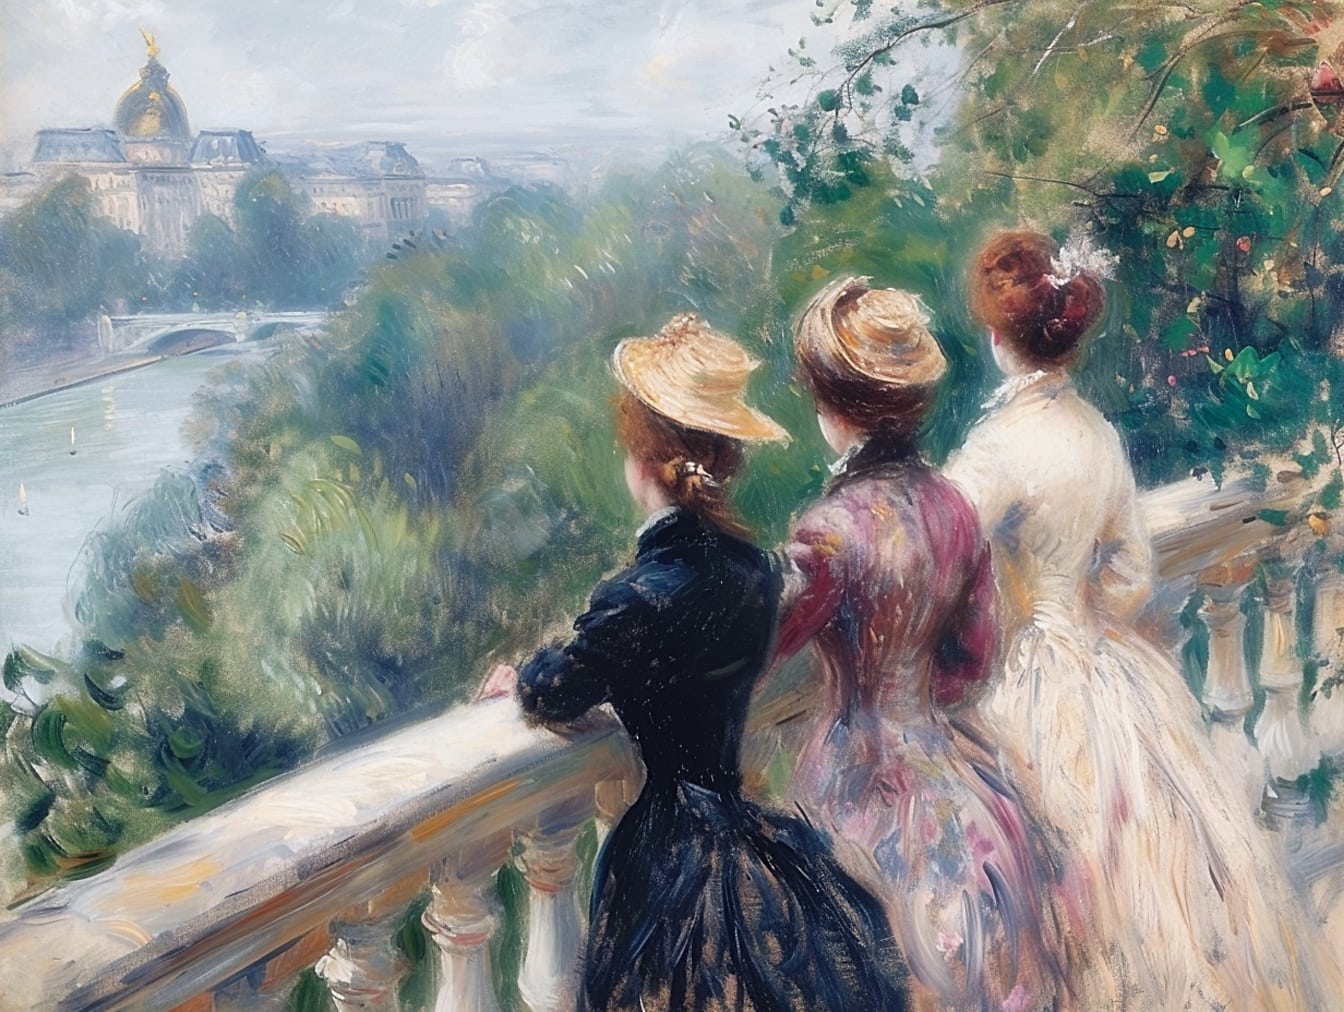 Olieverfschilderij van drie vrouwen in modieuze jurken die vanaf balkon naar een rivier kijken